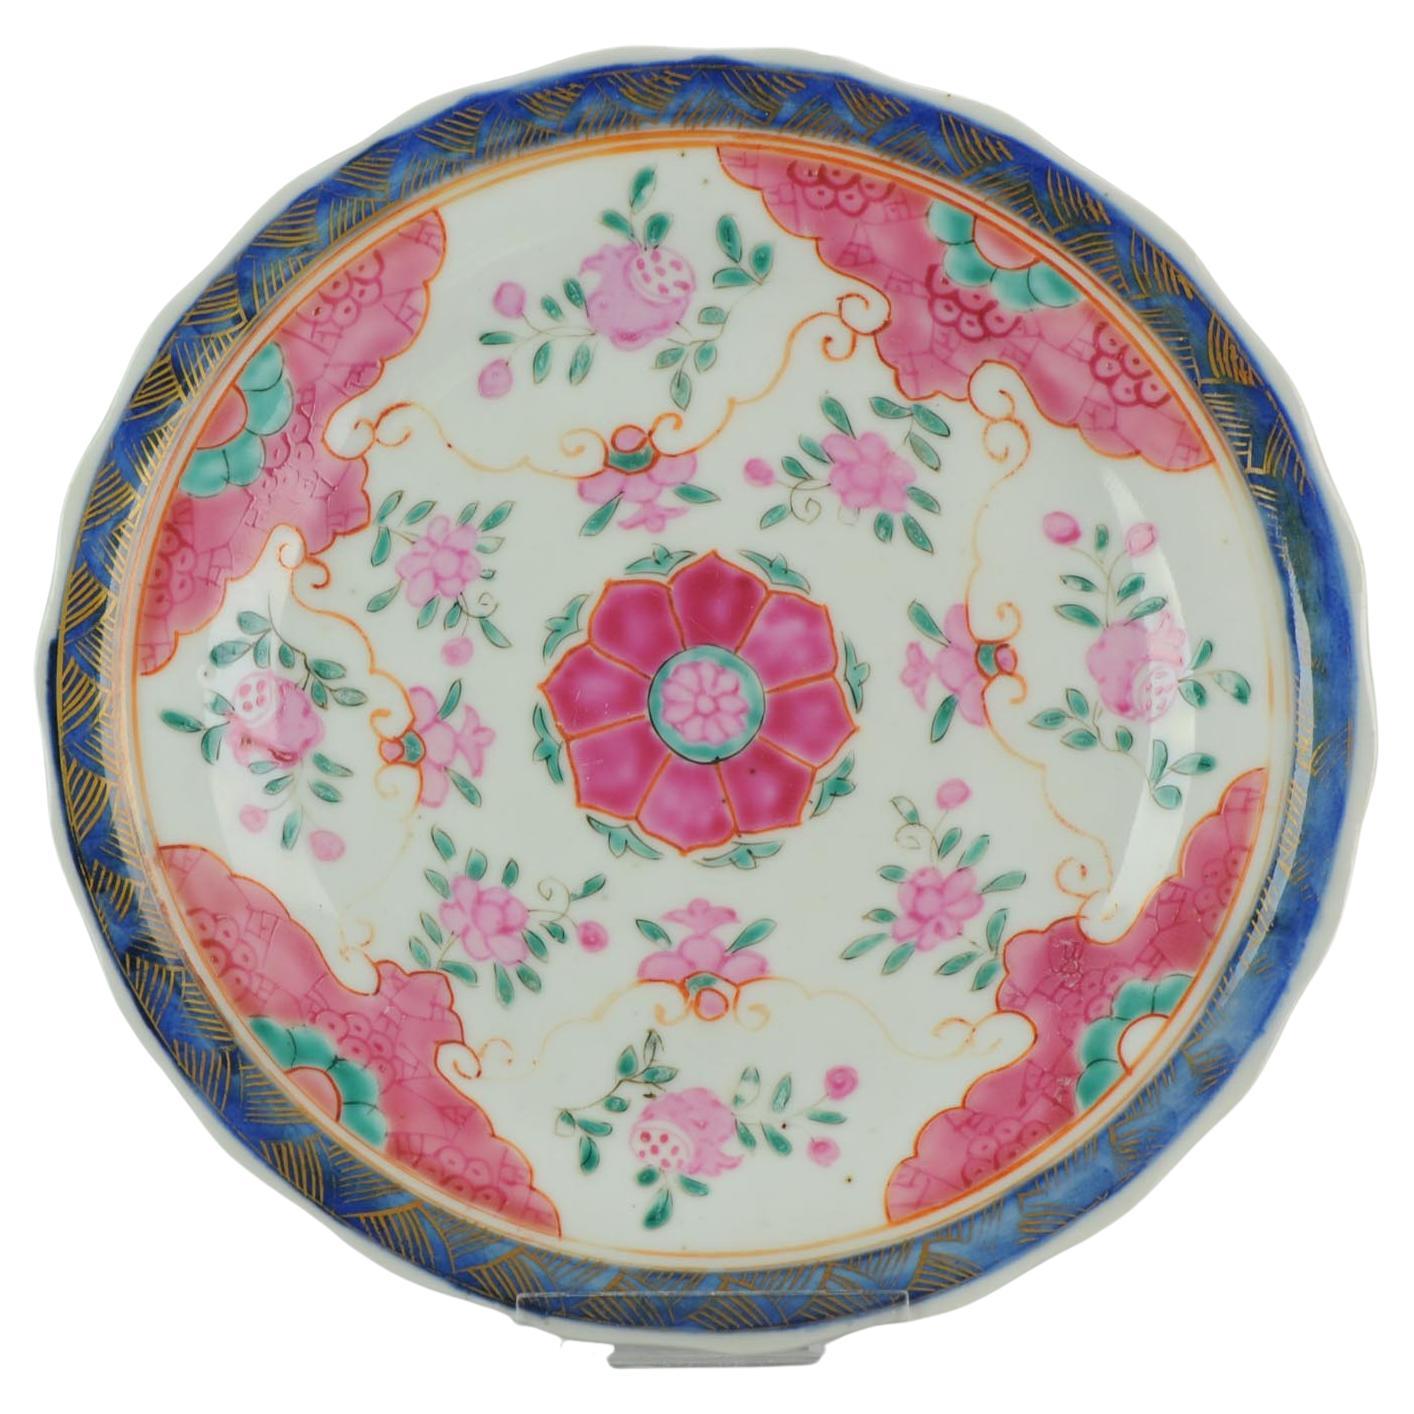 Ancienne assiette rose de la famille Bencharong en porcelaine chinoise pré Bencharong, vers 1800